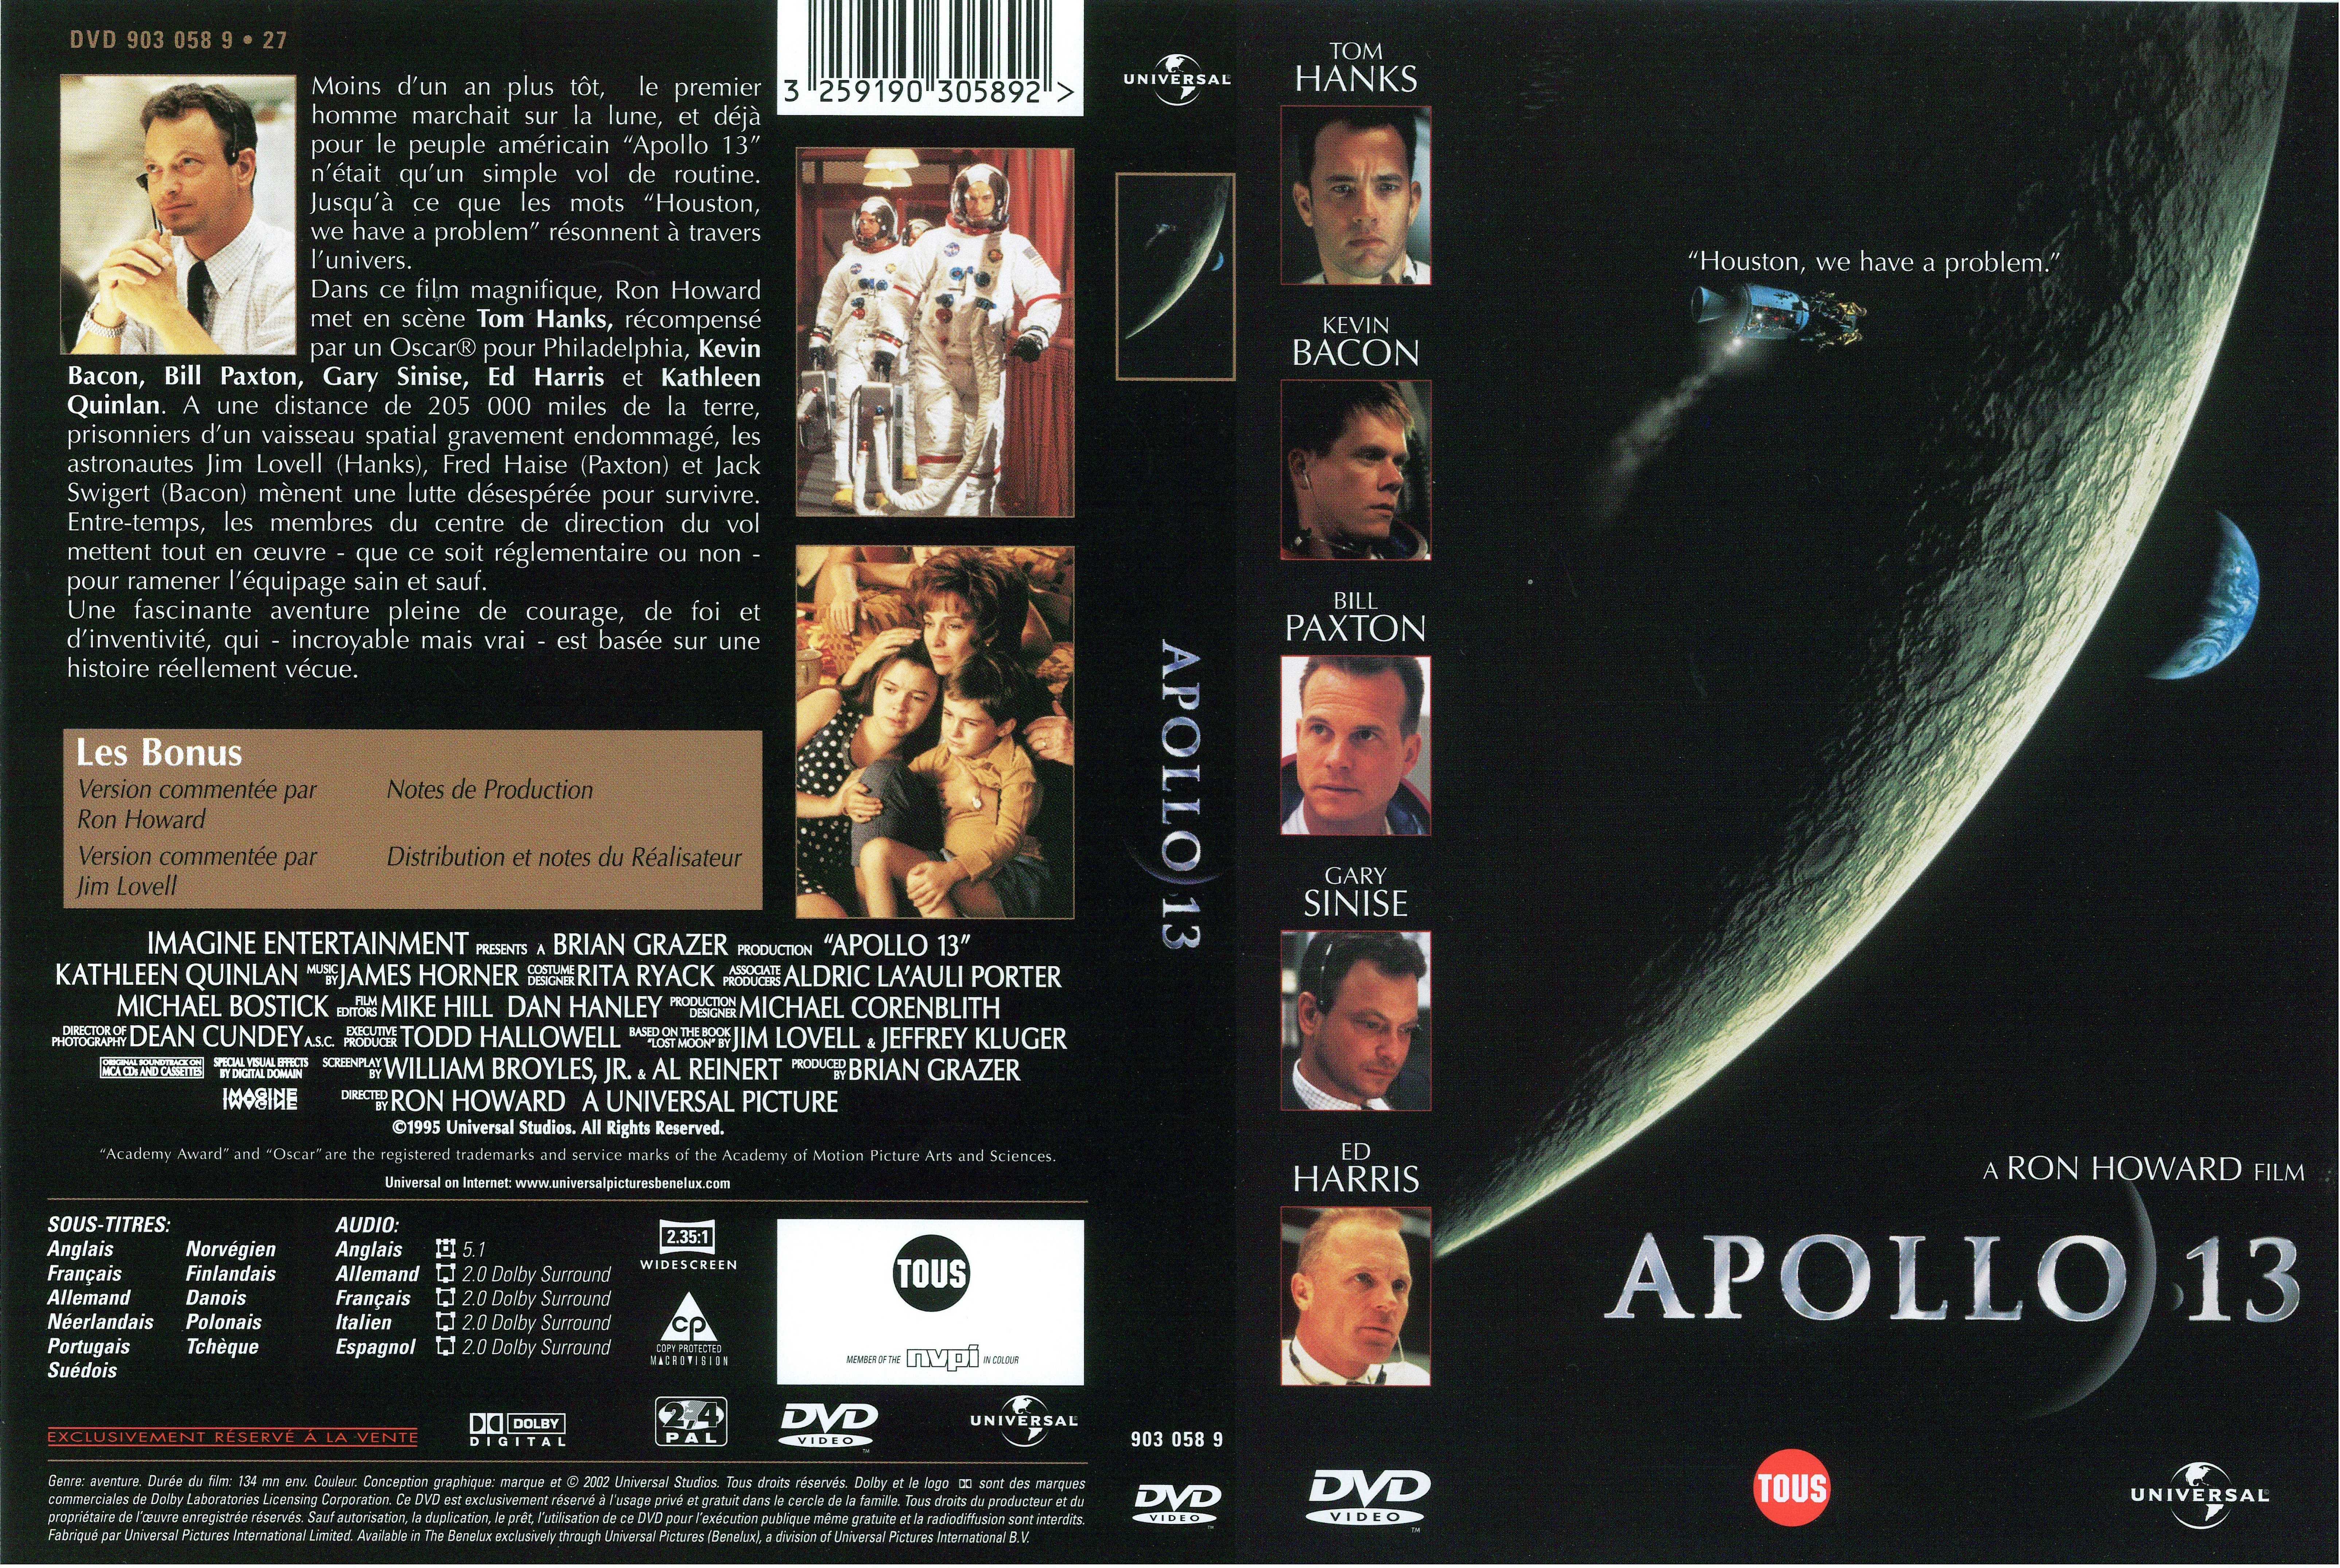 Jaquette DVD Apollo 13 v2